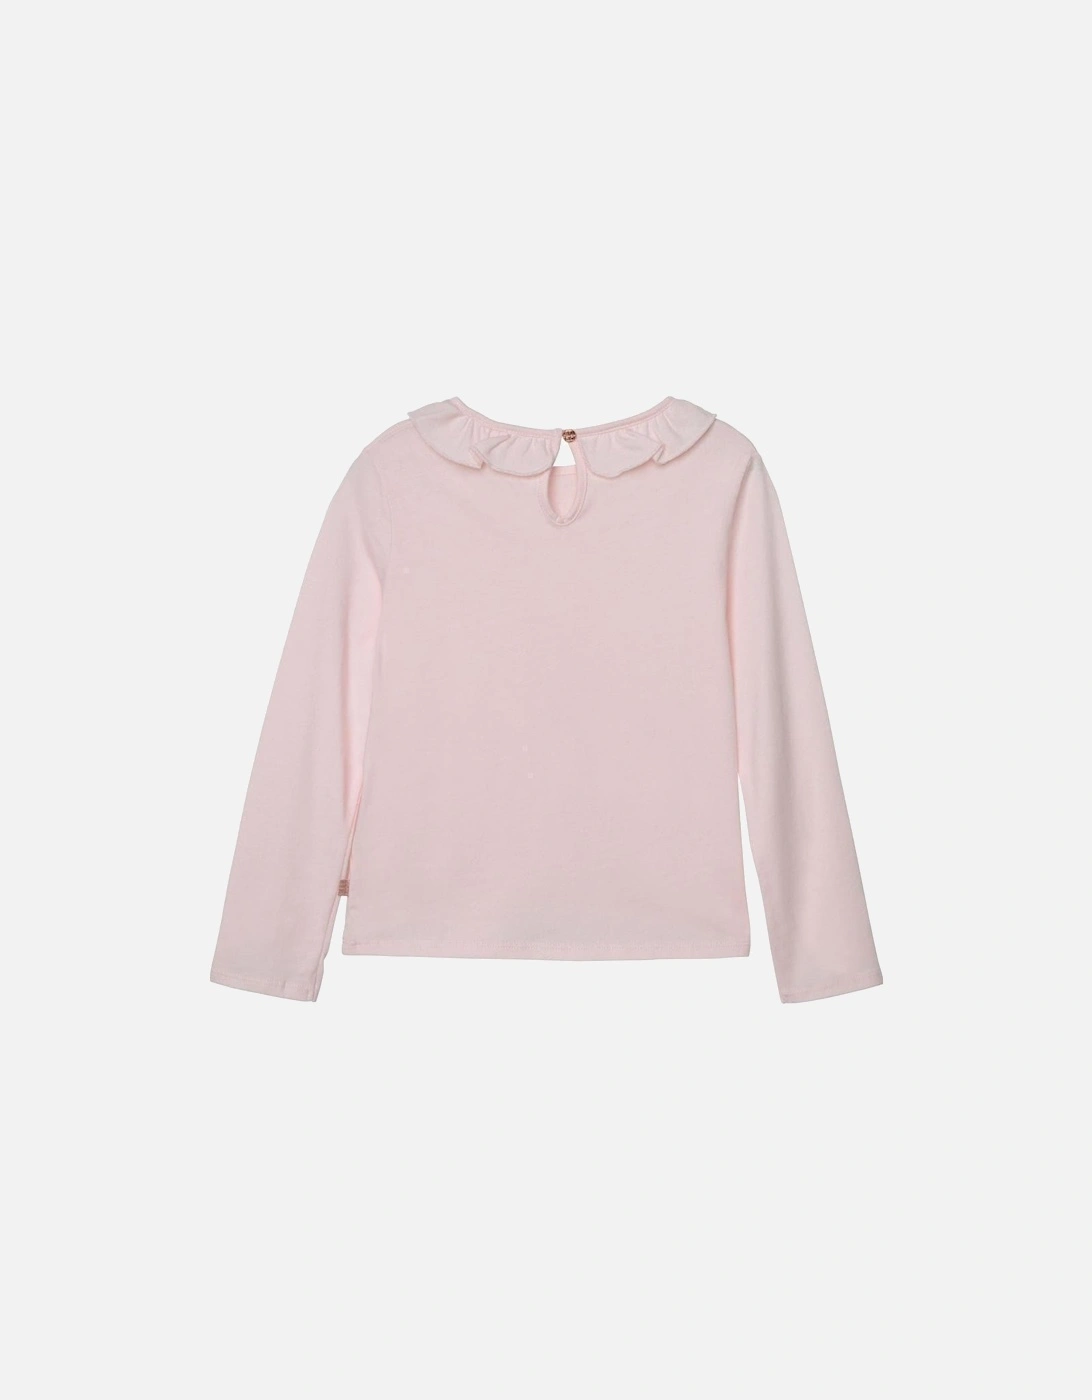 Girls Pink Long Sleeve T-Shirt